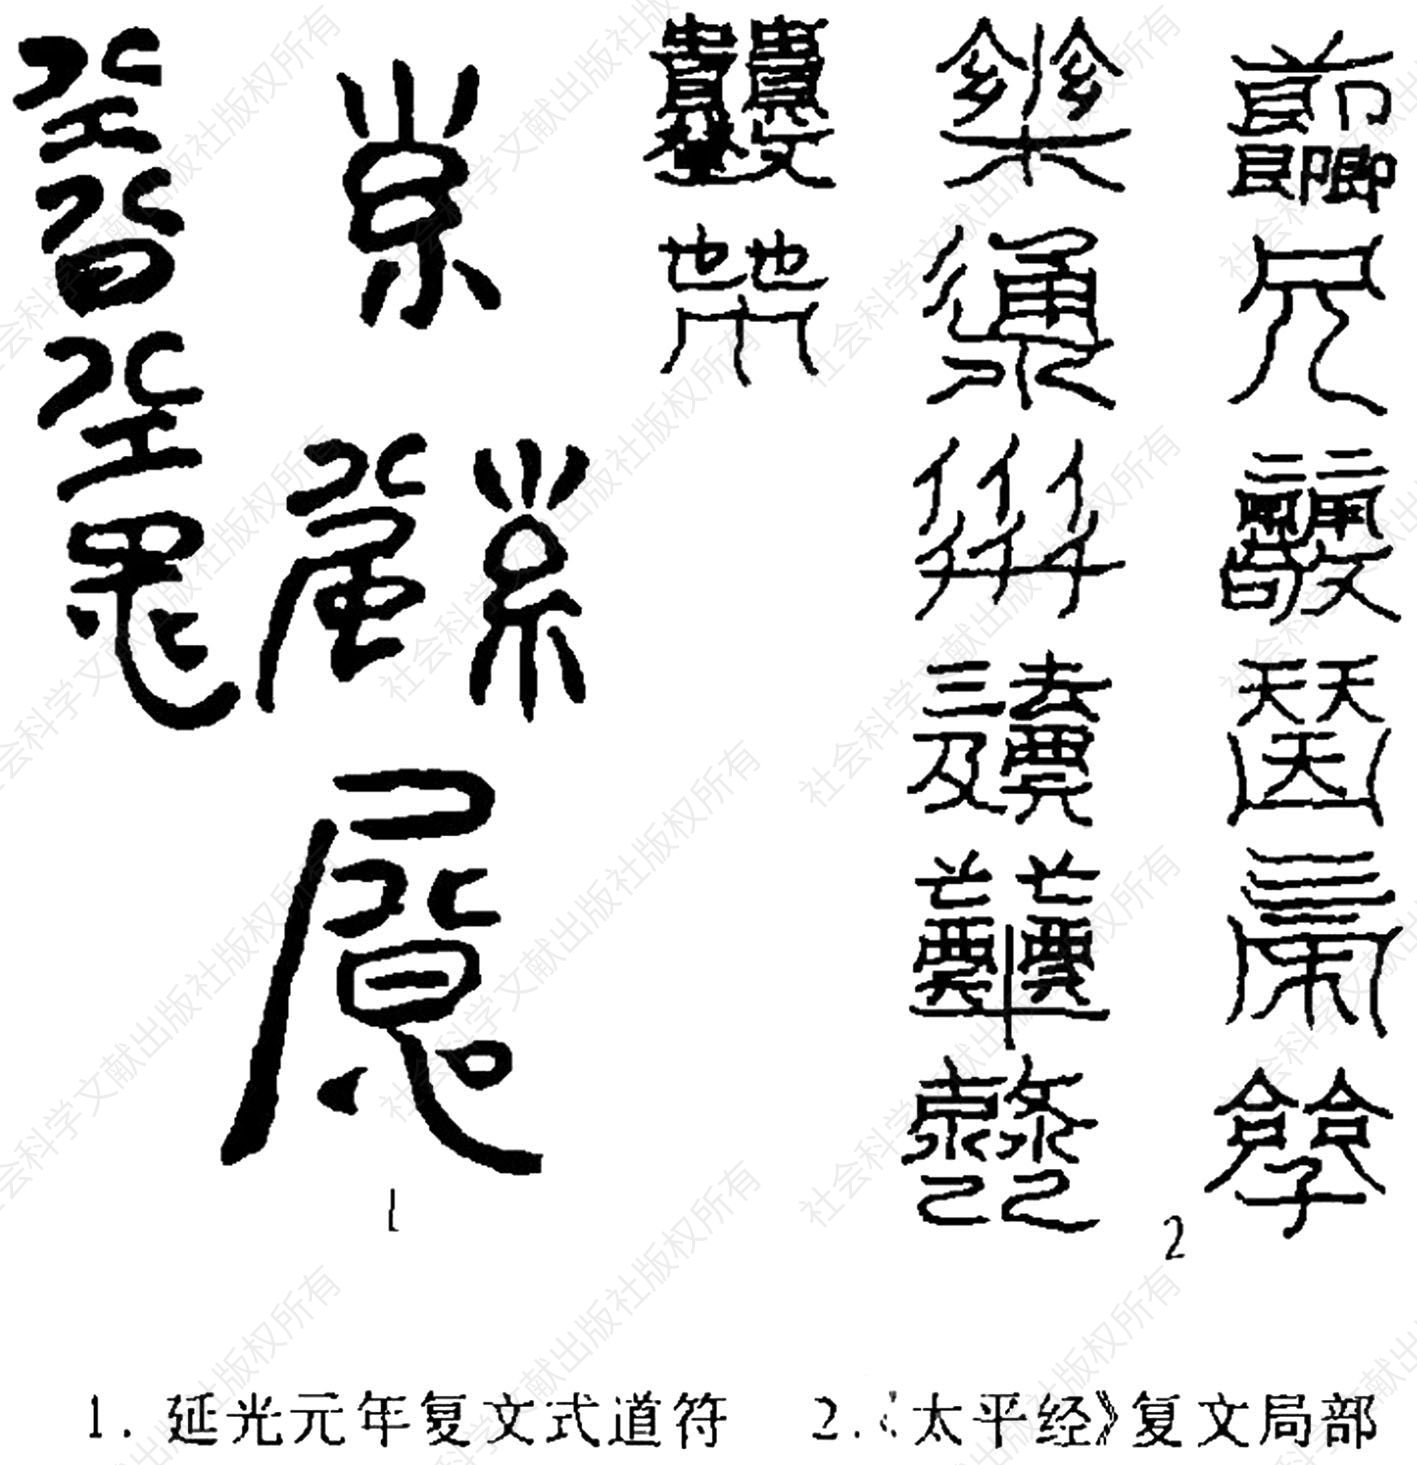 图9 延光元年镇墓符及其与《太平经》复文符的比较（王育成：《略论考古发现的早期道符》，《考古》1998年第1期，第76页）